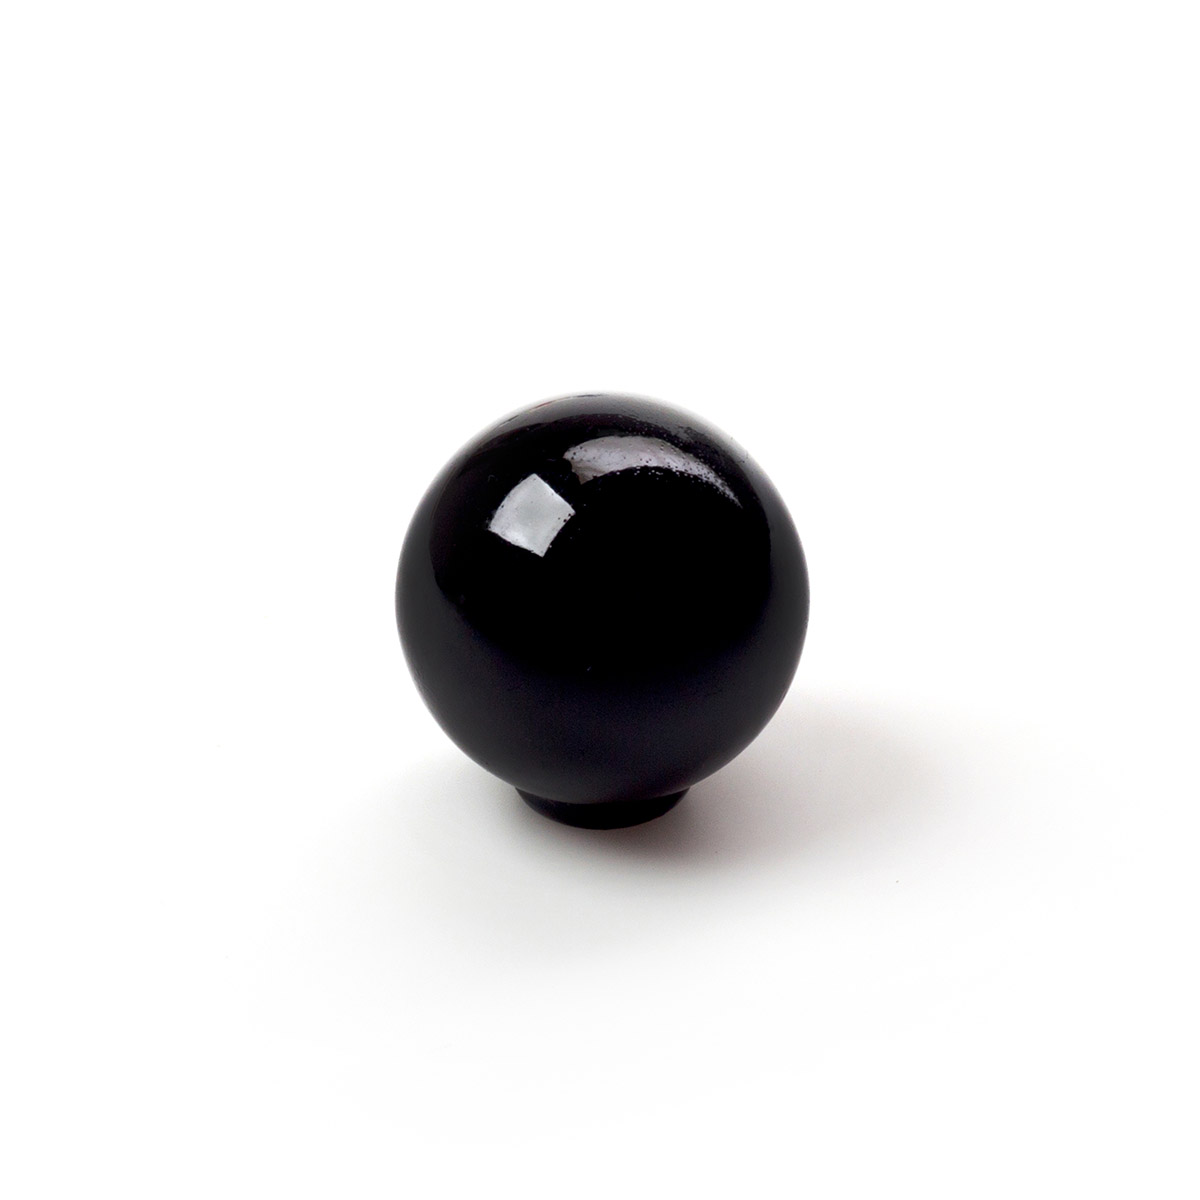 Sac avec 6 boutons en plastique avec finition noire, dimensions: 28x28x29mm Ø: 28mm